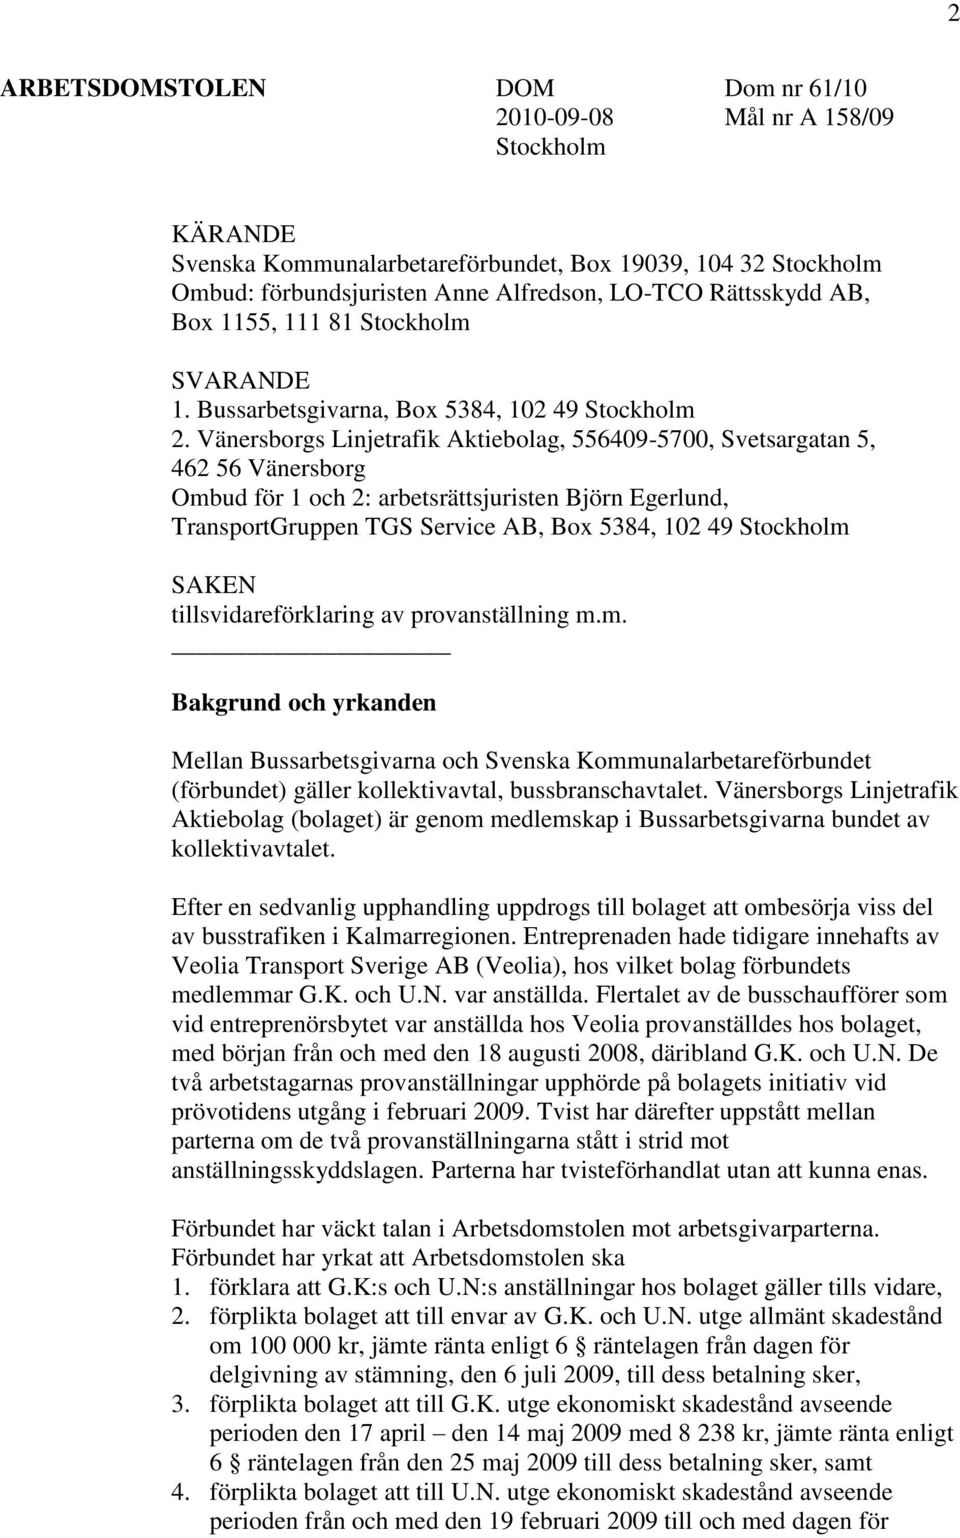 Vänersborgs Linjetrafik Aktiebolag, 556409-5700, Svetsargatan 5, 462 56 Vänersborg Ombud för 1 och 2: arbetsrättsjuristen Björn Egerlund, TransportGruppen TGS Service AB, Box 5384, 102 49 Stockholm